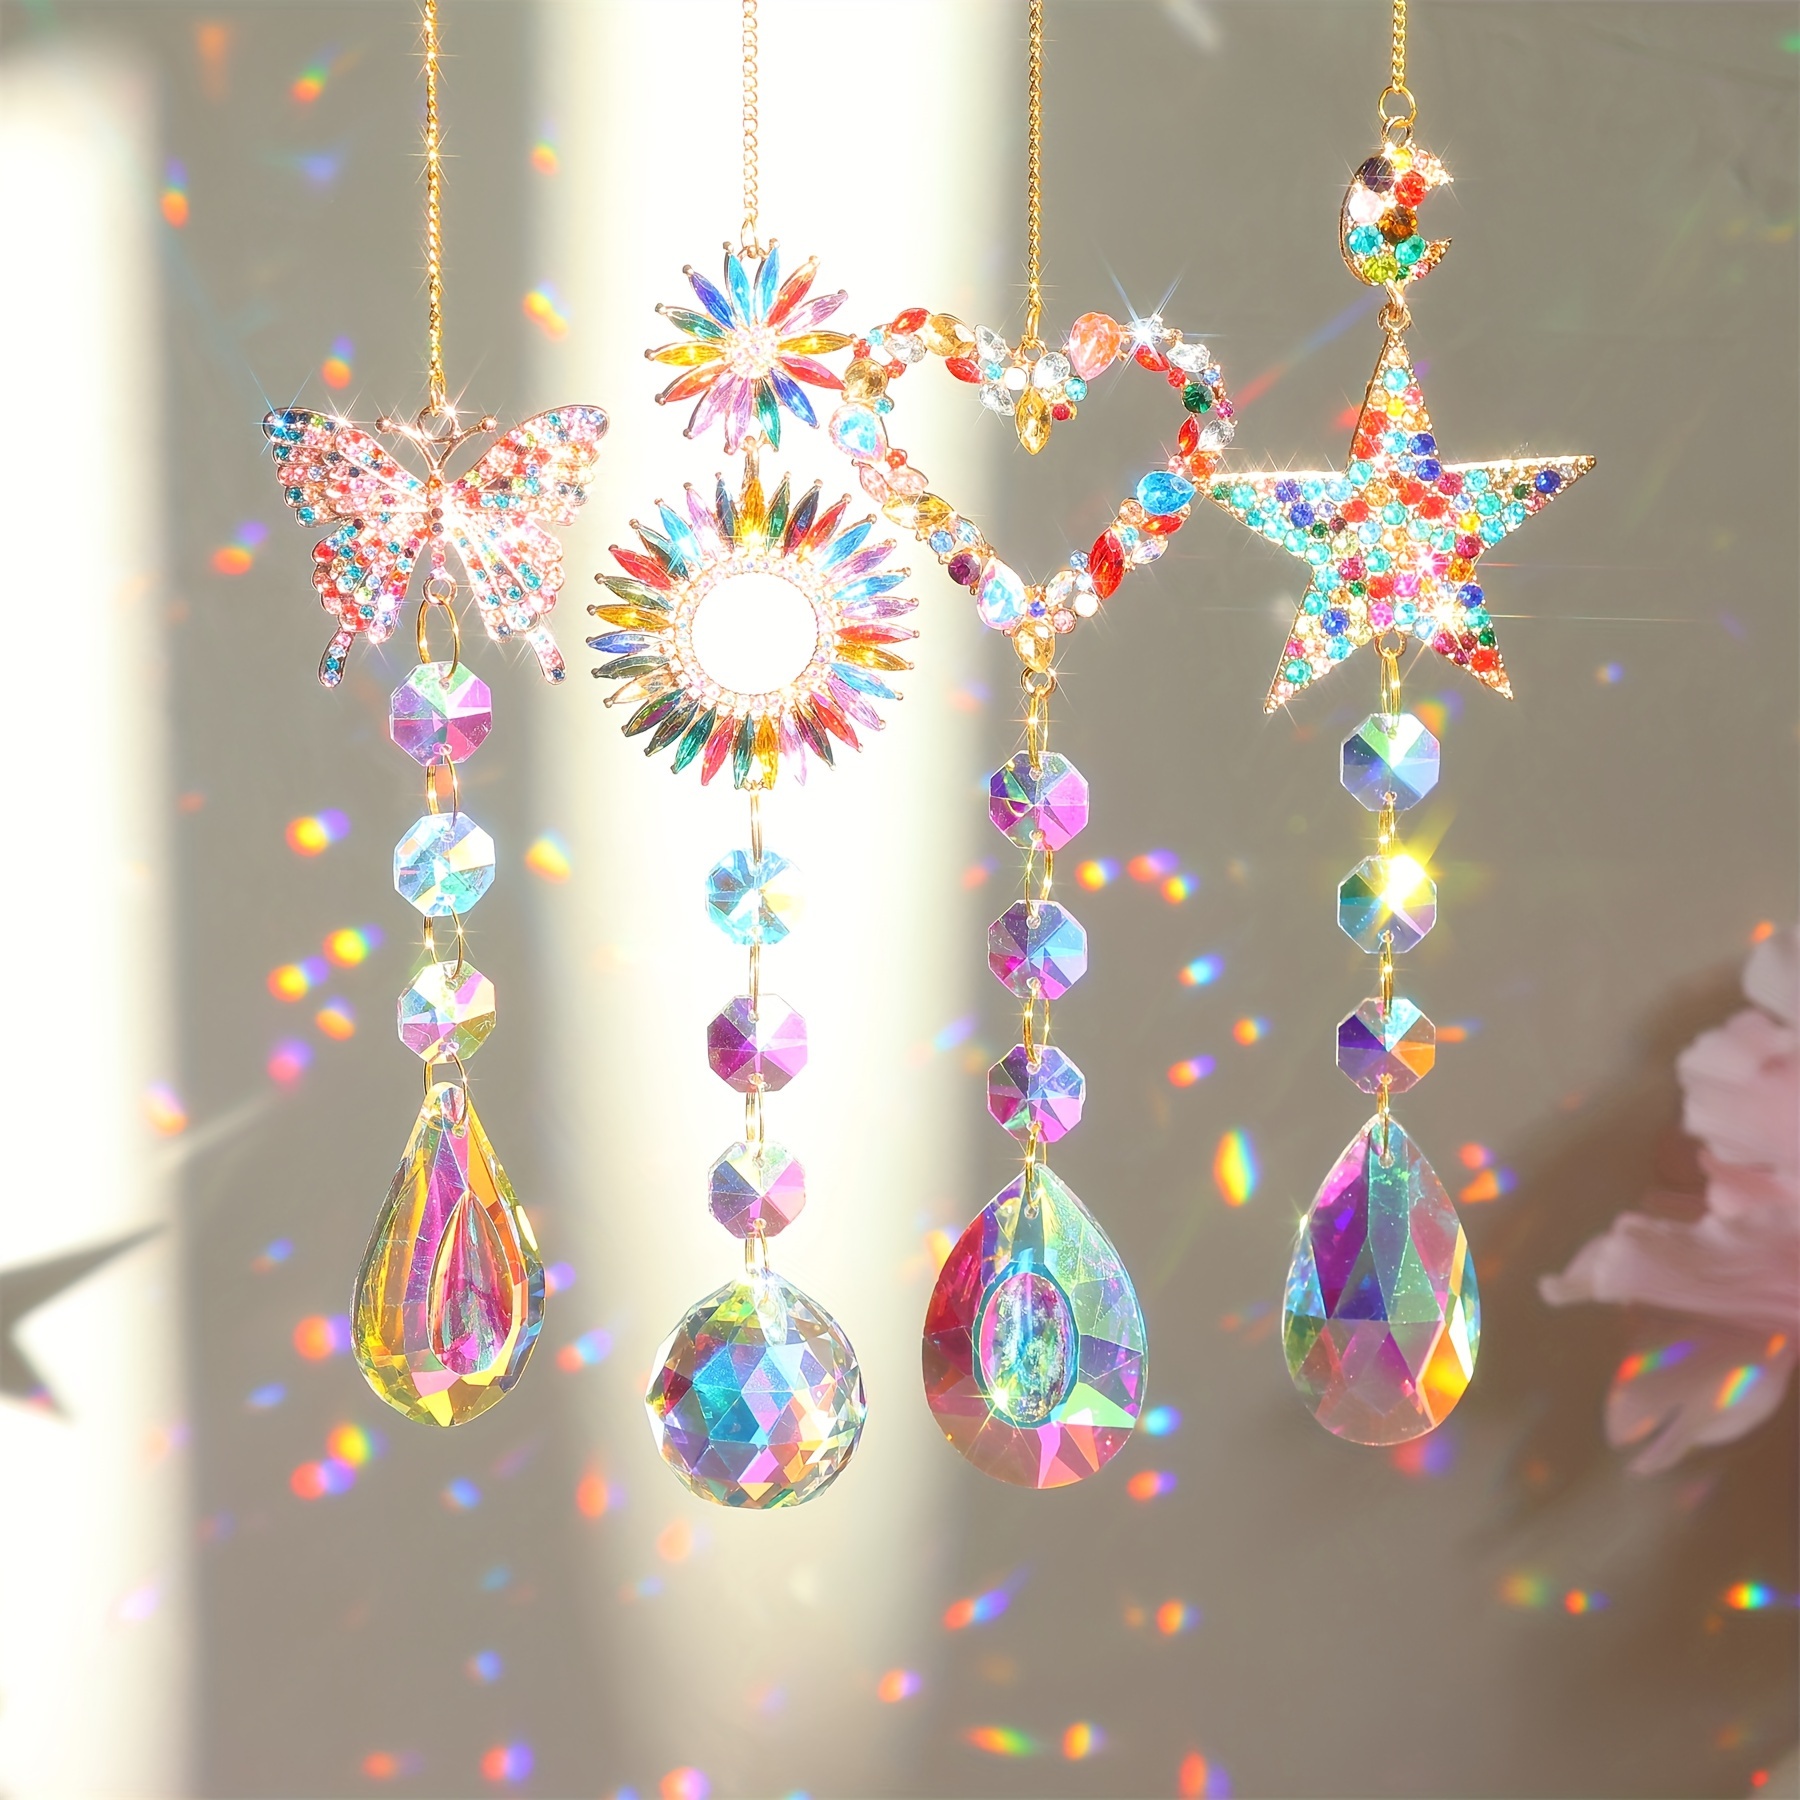 Crystal Rainbow Sun Catcher, Verre Transparent Boule de Cristal Prismes  Suncatcher Arbre De Vie Fenêtre Suspendue Ornement Arc-en-ciel Fabricant  Noël Mariage